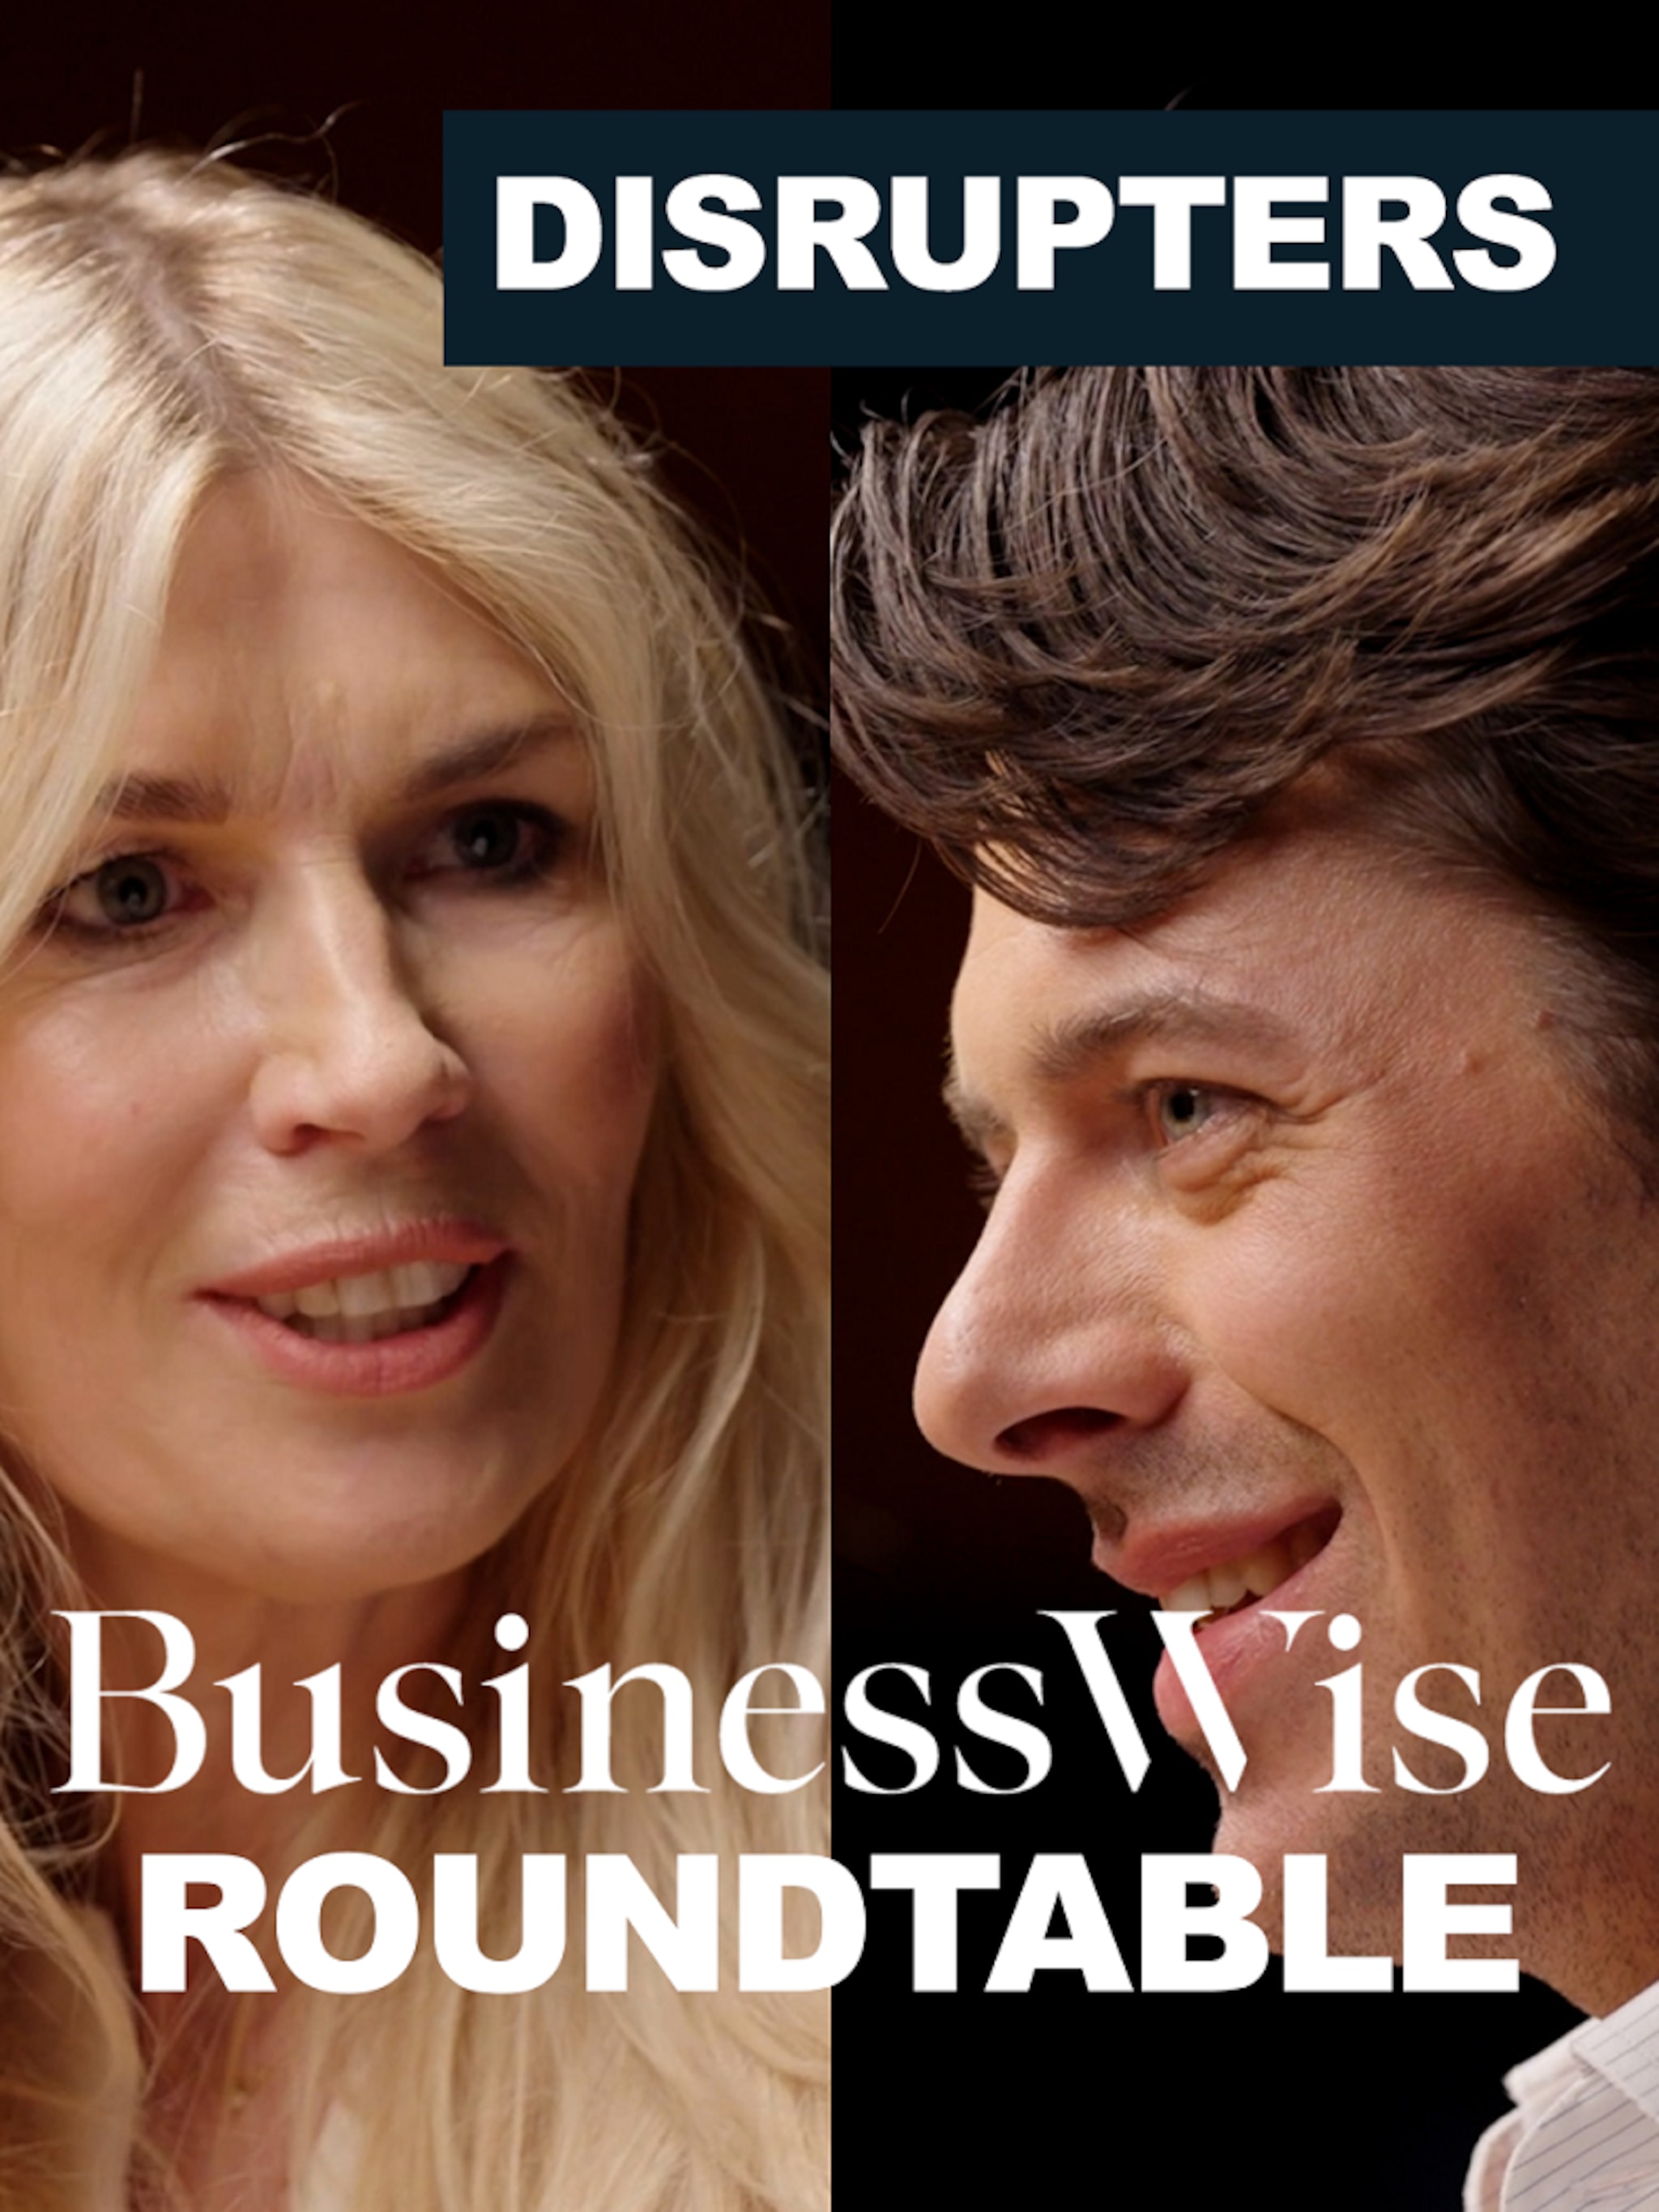 businesswise-roundtable-vier-disruptors-ondernemerschap-en-innovatie